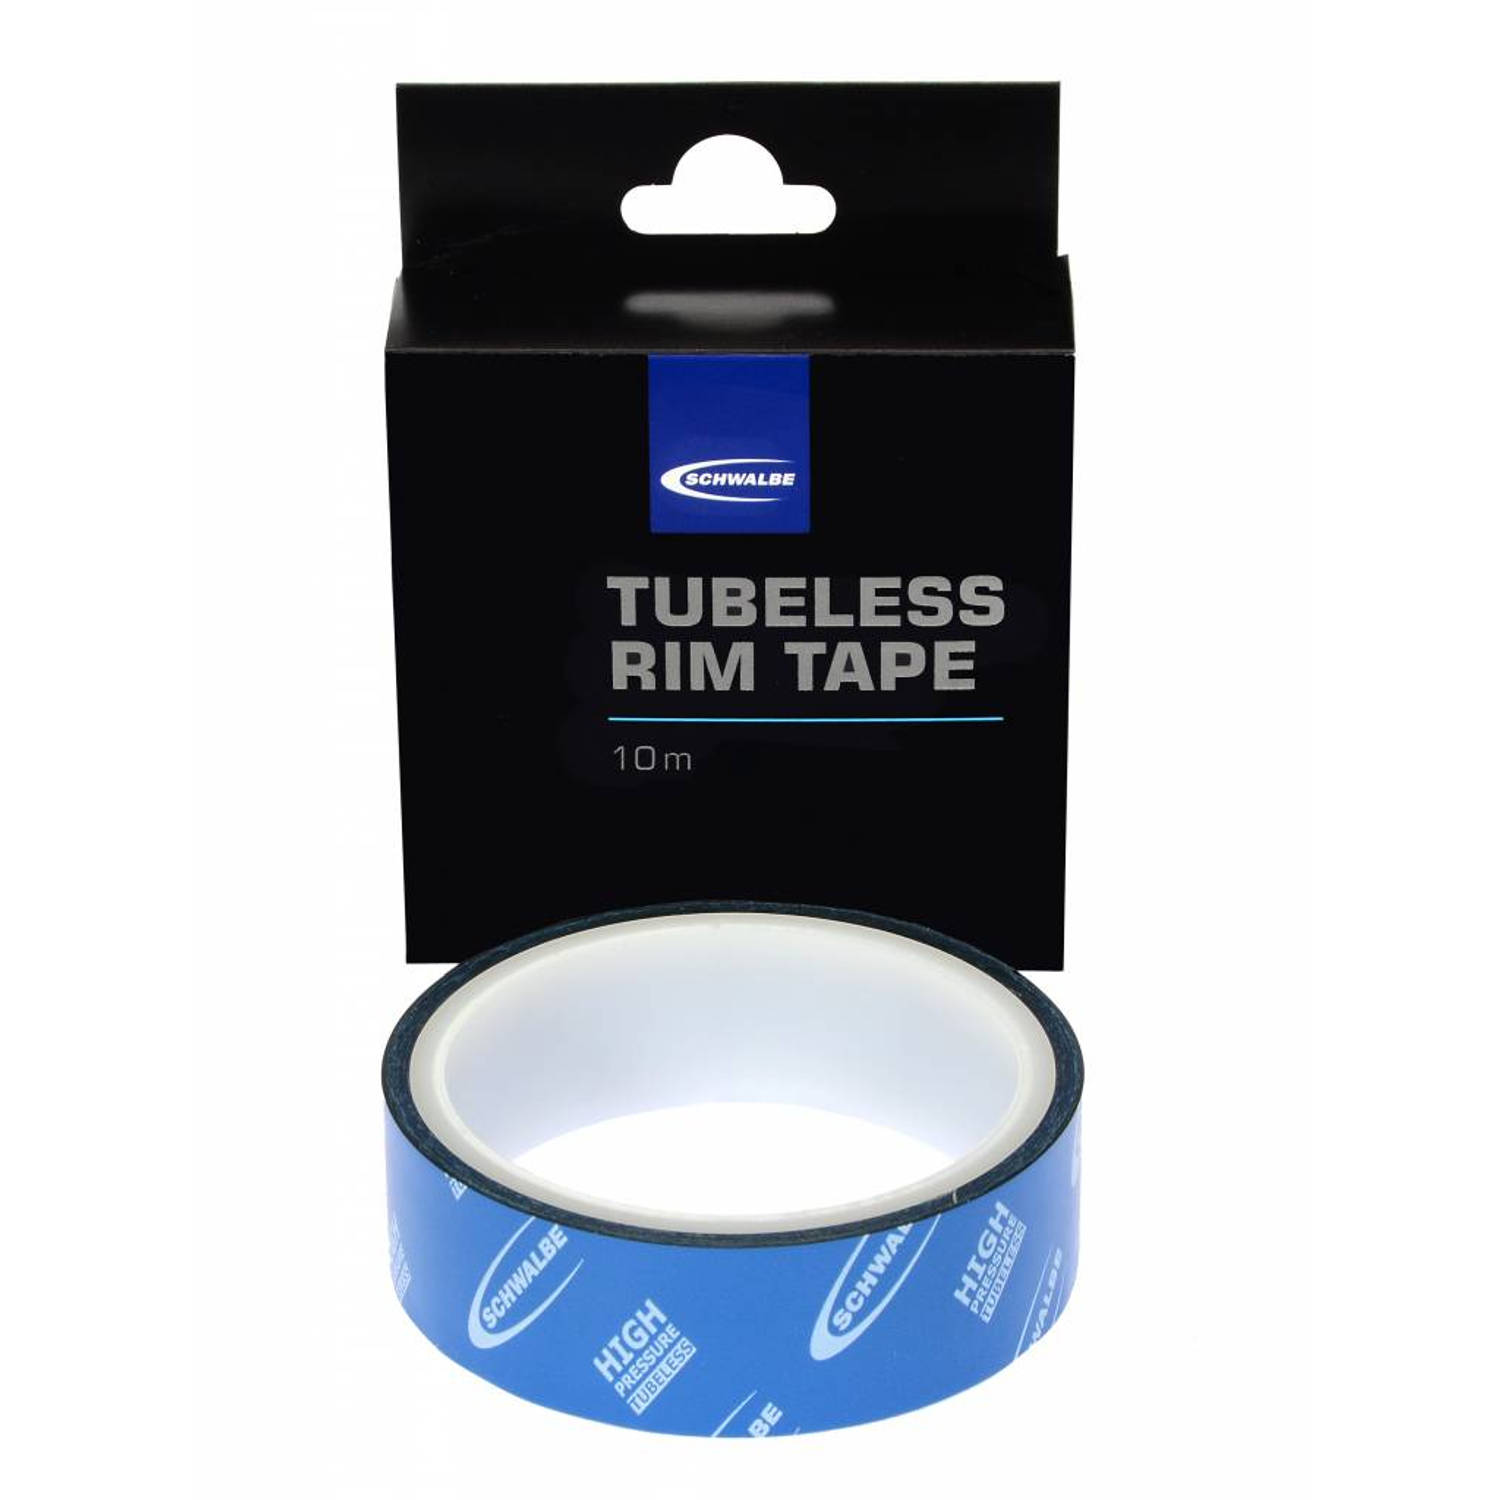 Tubeless Rim Tape